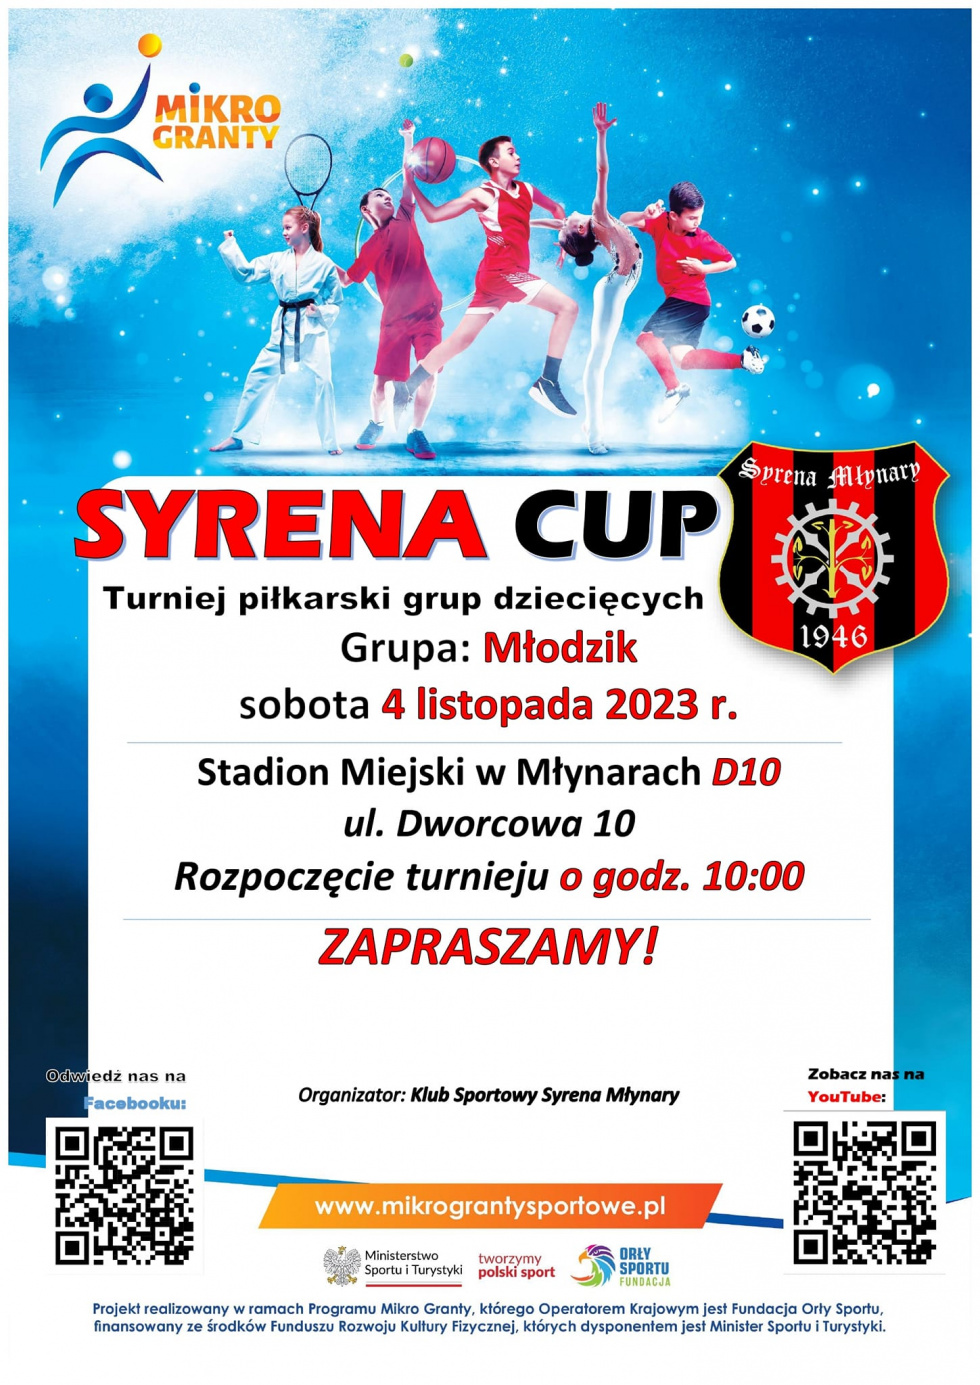 Zapraszamy na turniej piłkarski drużyn młodzieżowych Syrena CUP, już w tę sobotę!